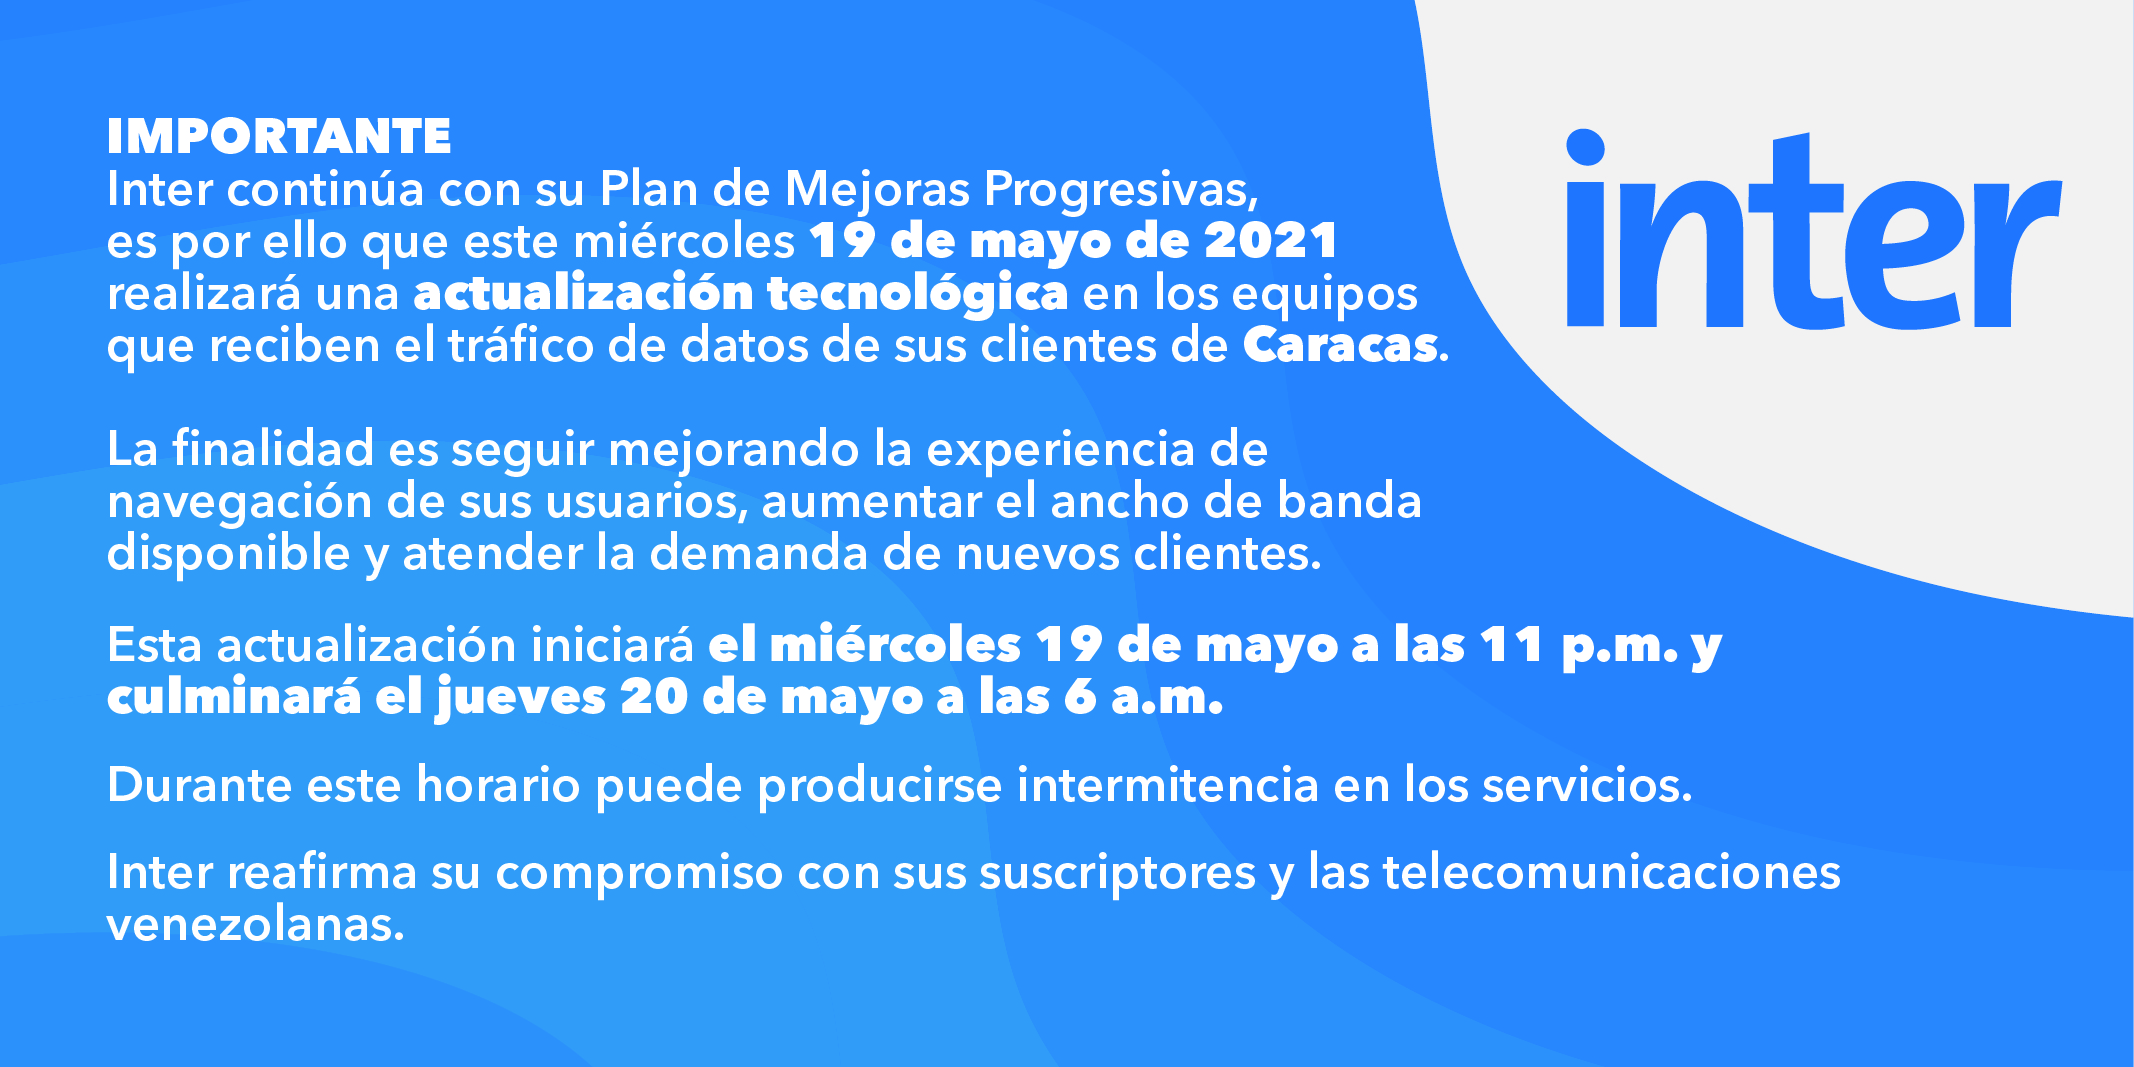 Inter realizará actualización tecnológica para aumentar ancho de banda en Caracas este #19May